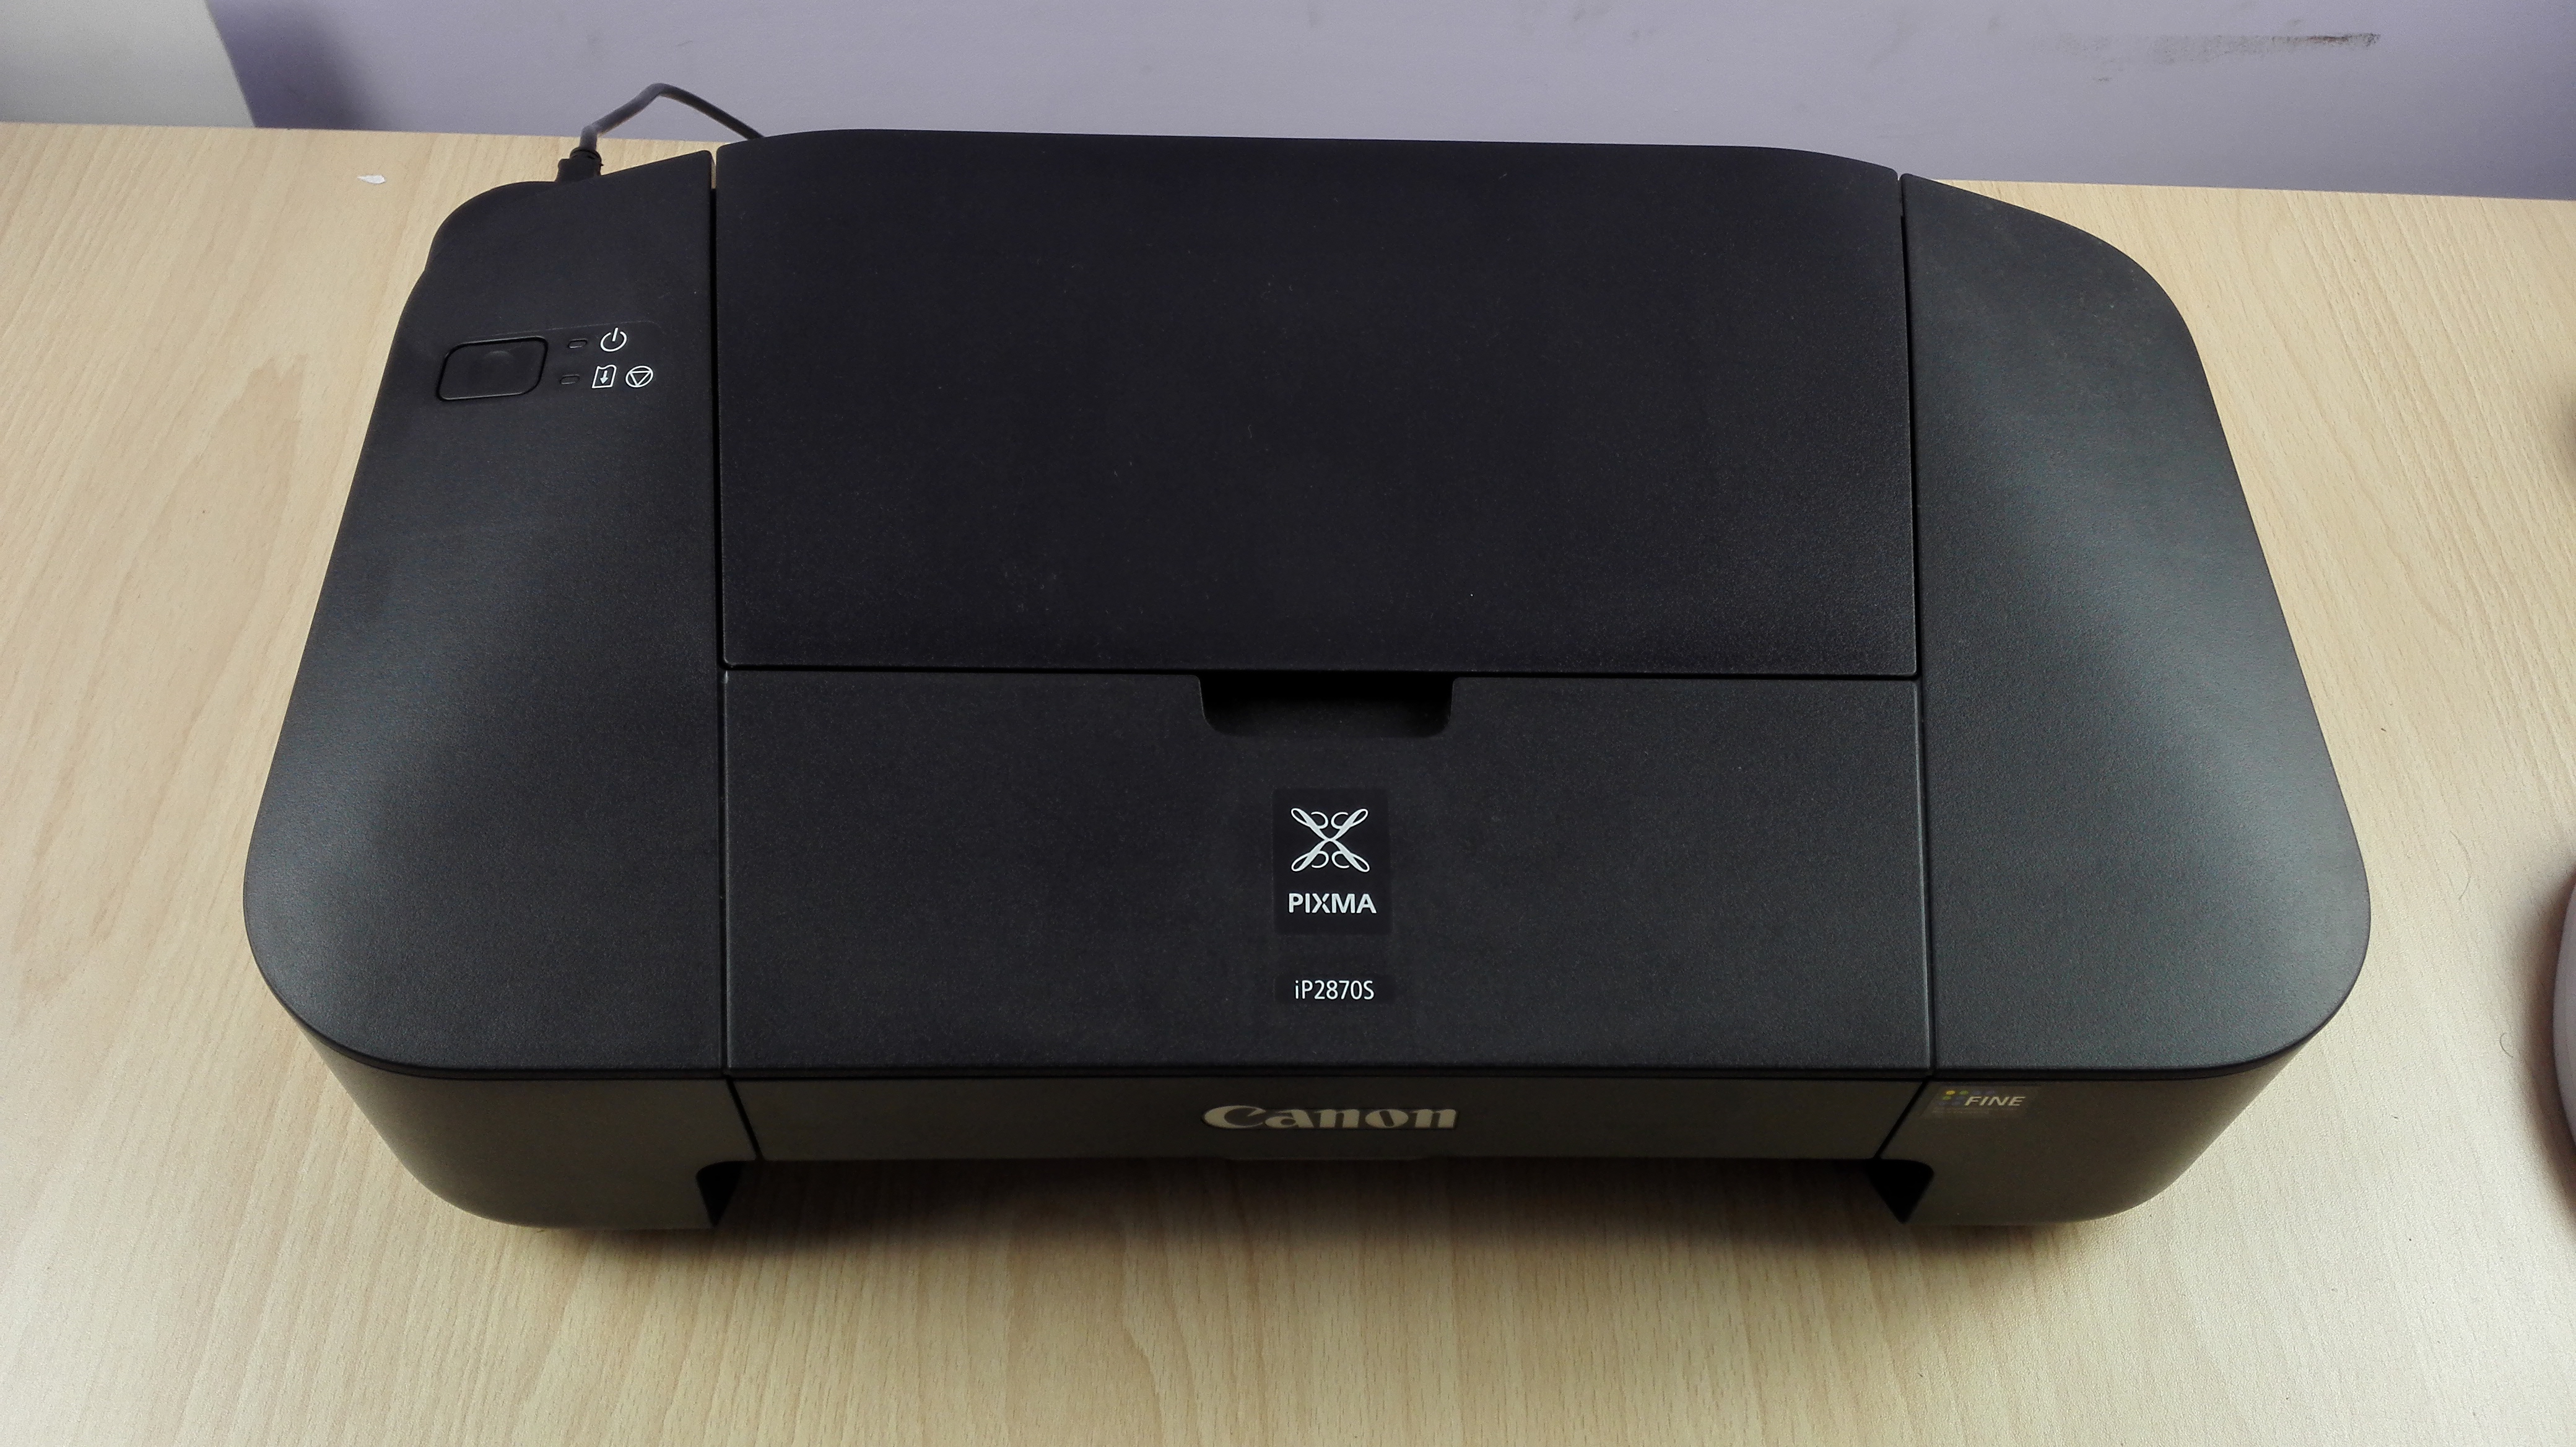 Canon Pixma IP 2870S Druckerüberprüfung, Funktionen und Übersicht